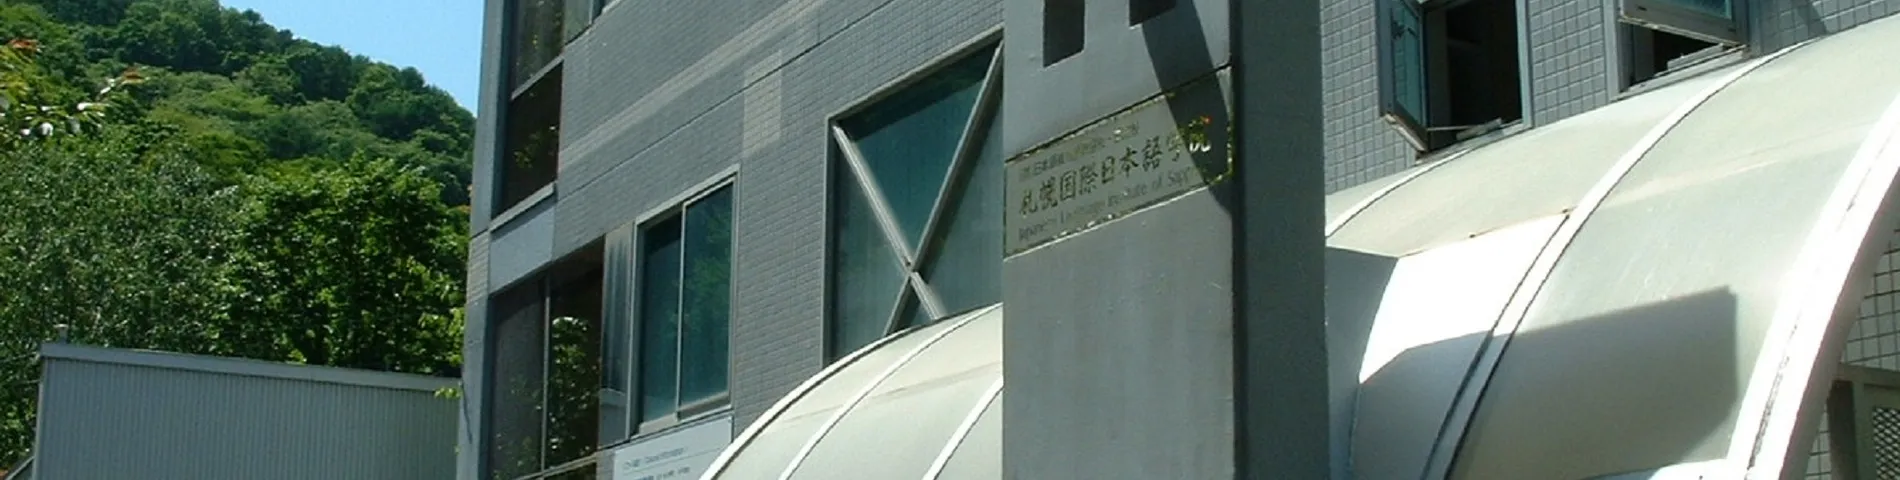 Japanese Language Institute of Sapporo صورة 1